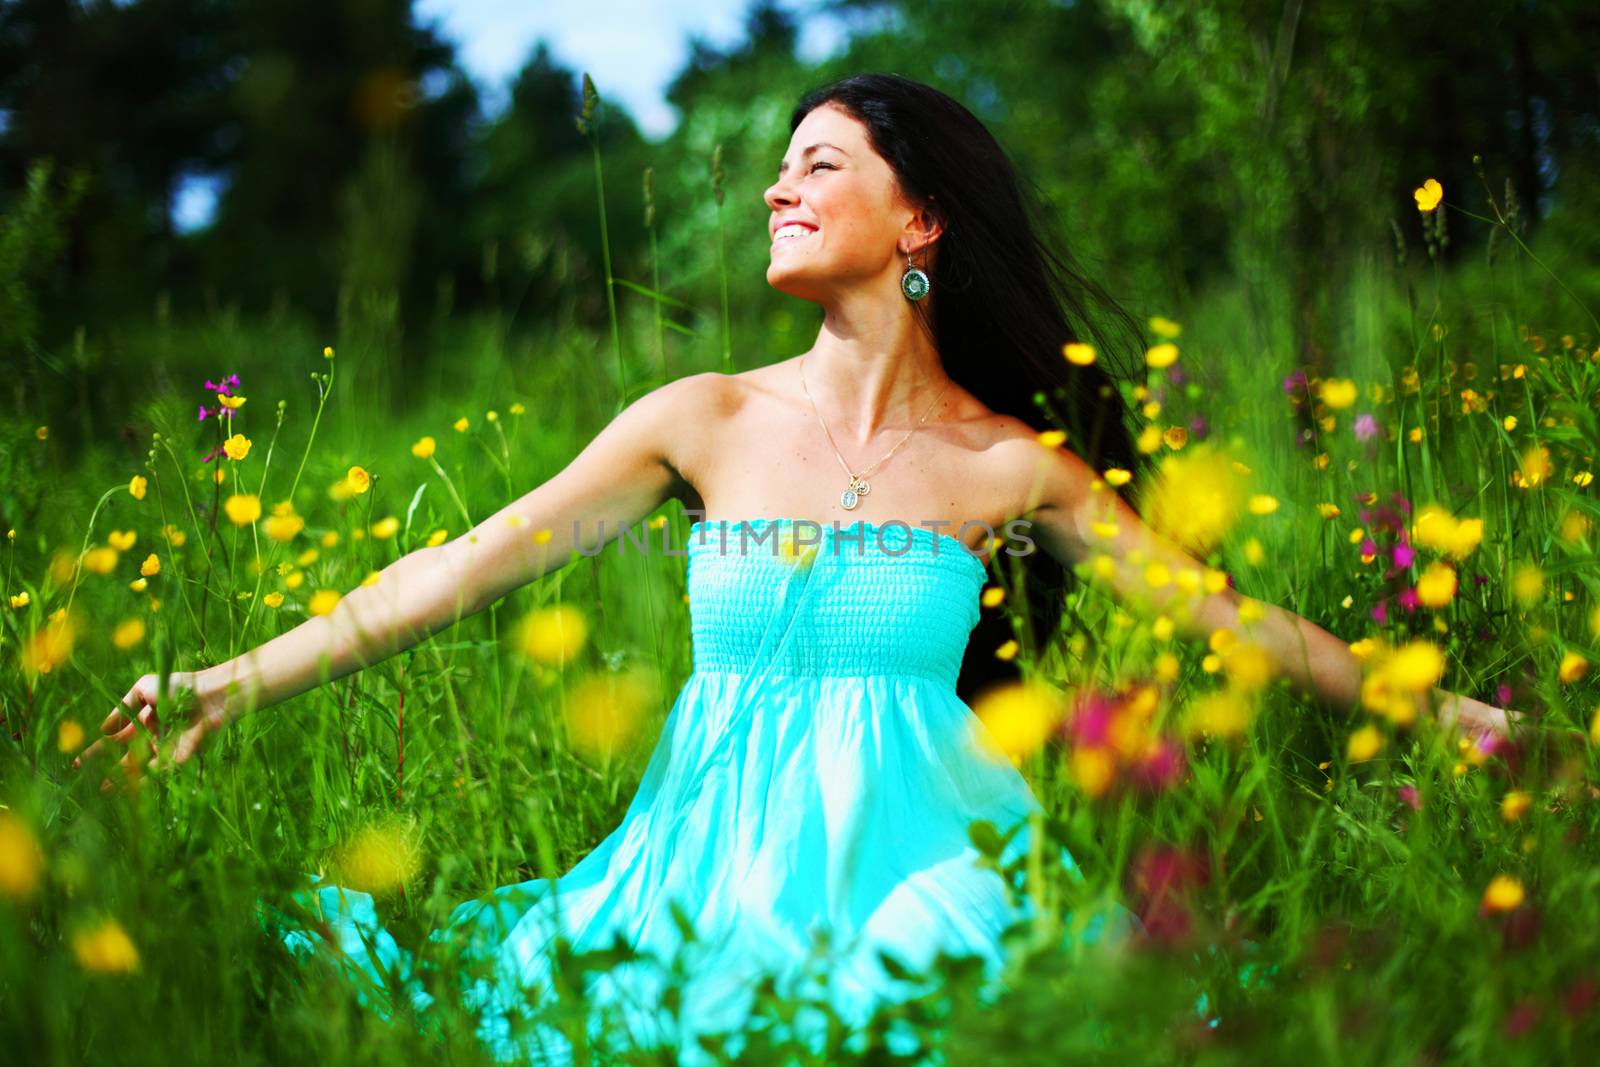 woman on summer flower field by Yellowj